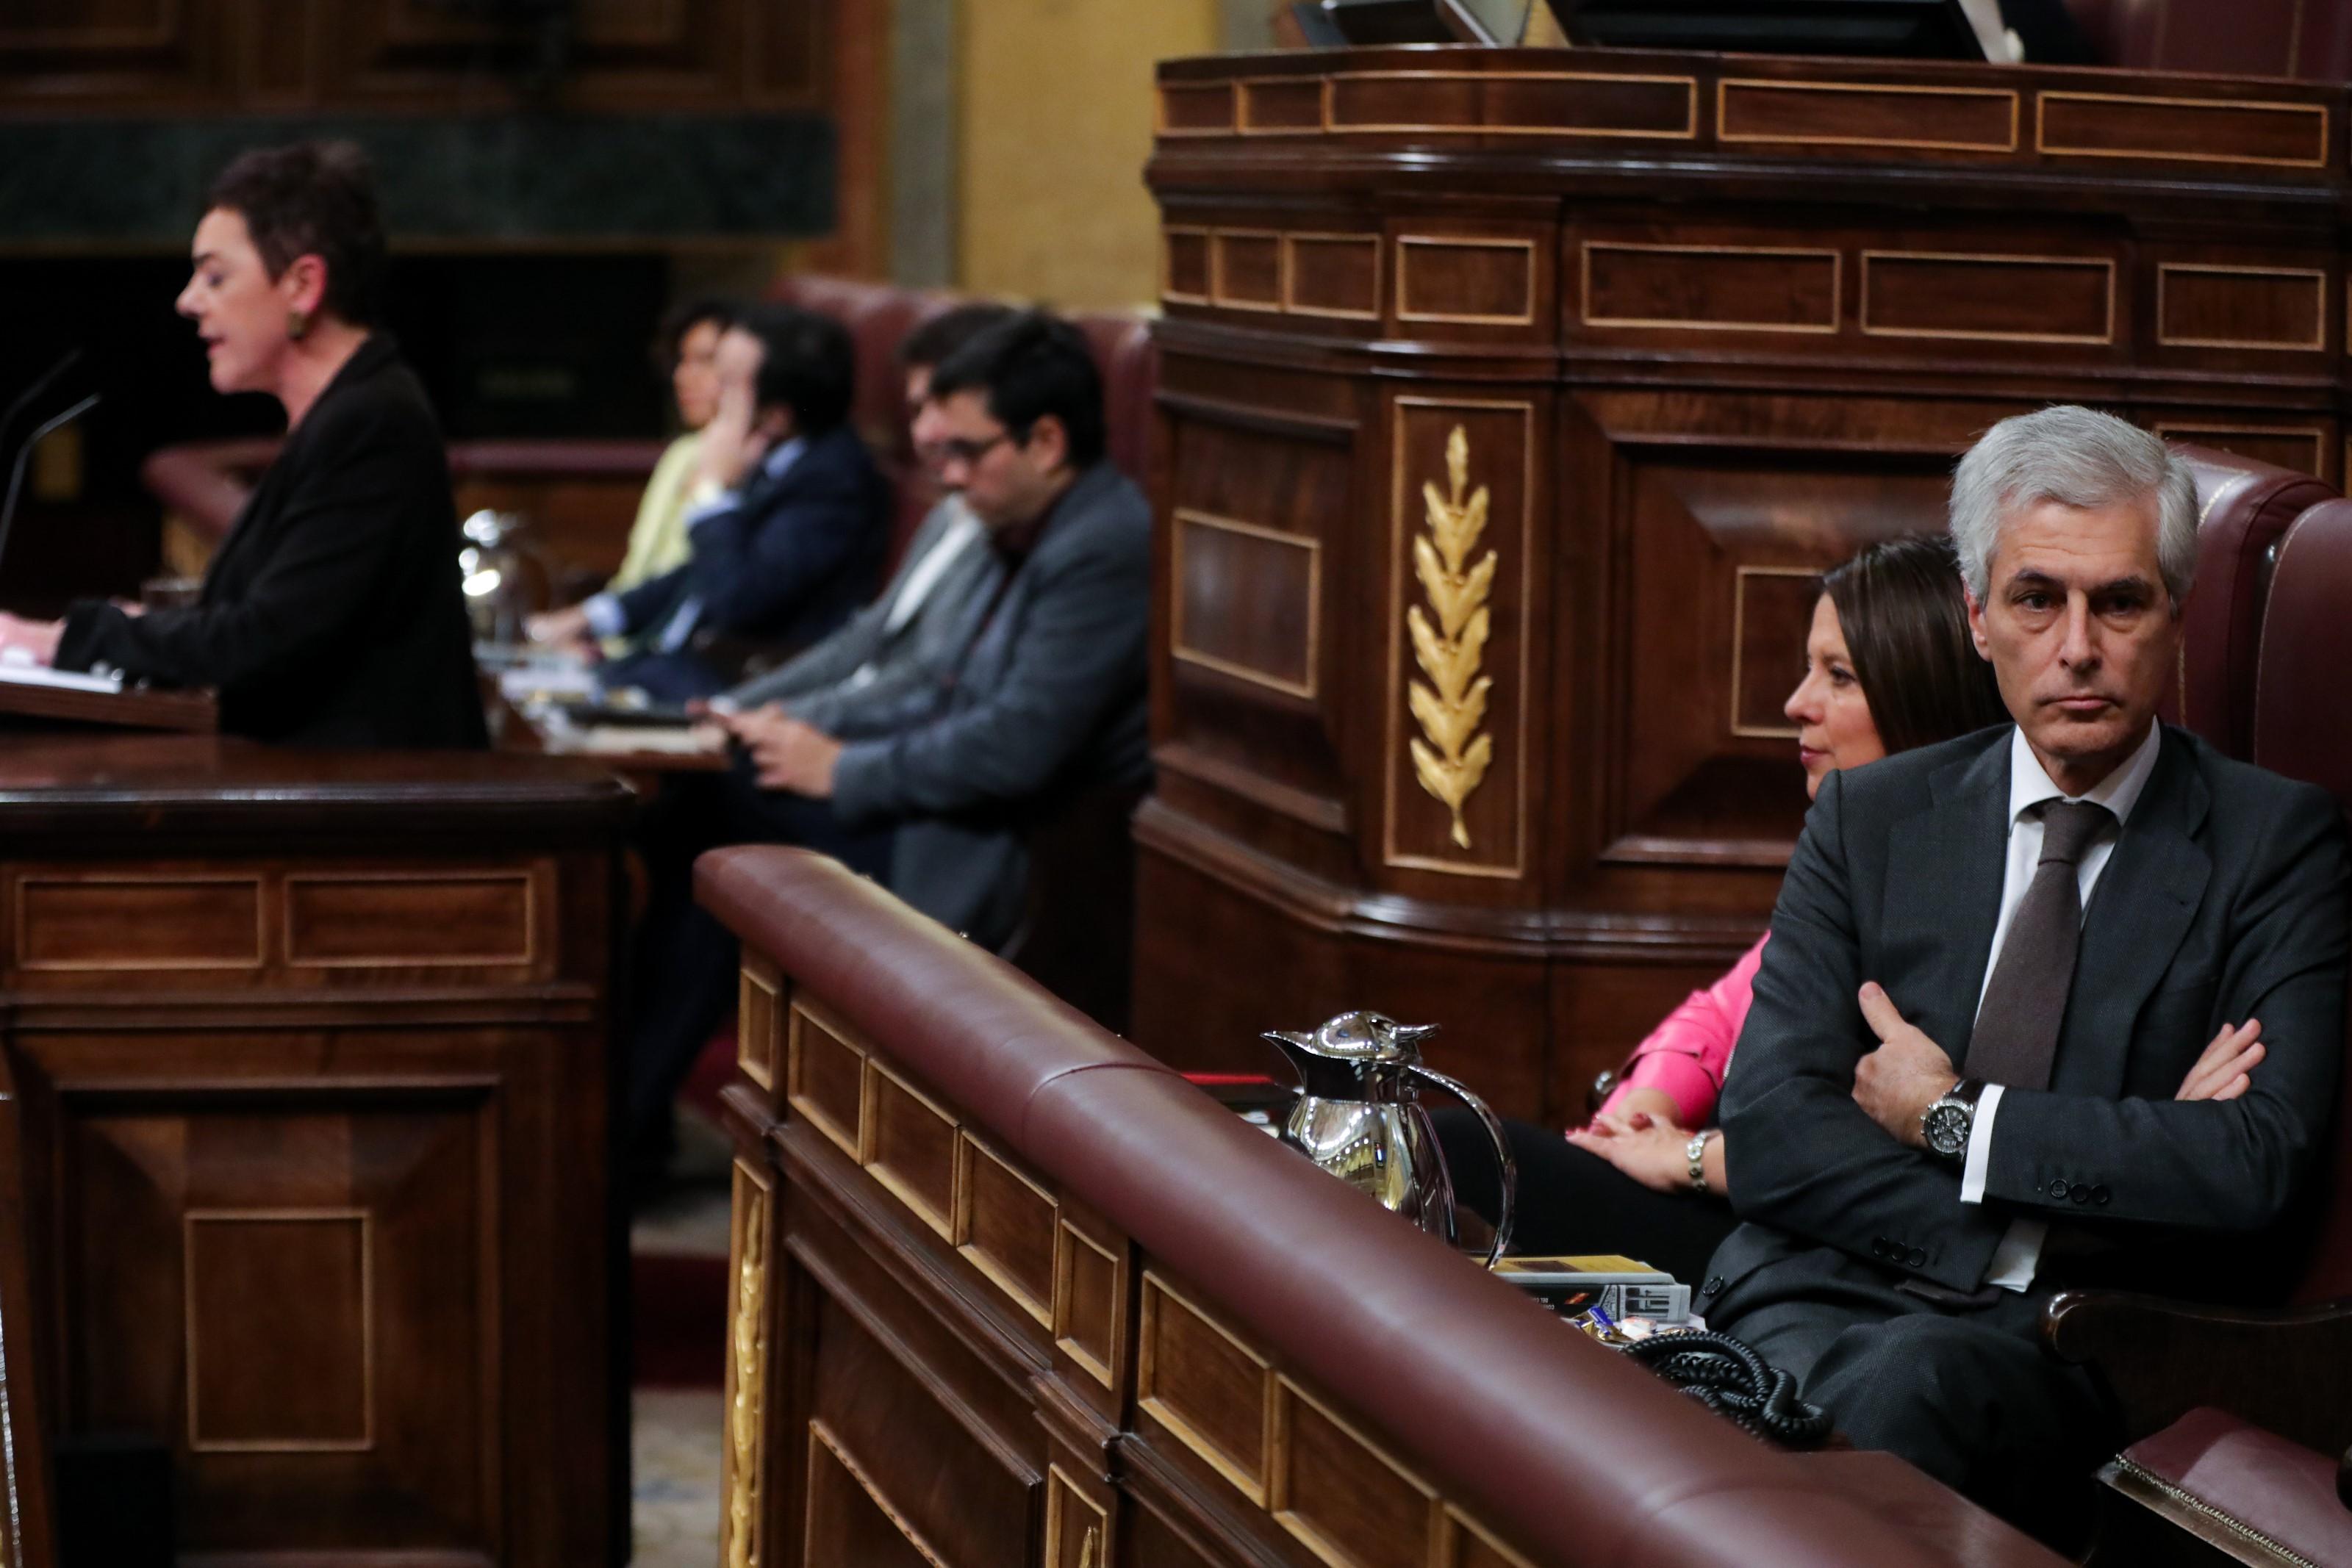 El secretario cuarto del Congreso Adolfo Suárez Illana (PP) le da la espalda a la portavoz de EH Bildu en el Congreso de los Diputados Mertxe Aizpurua